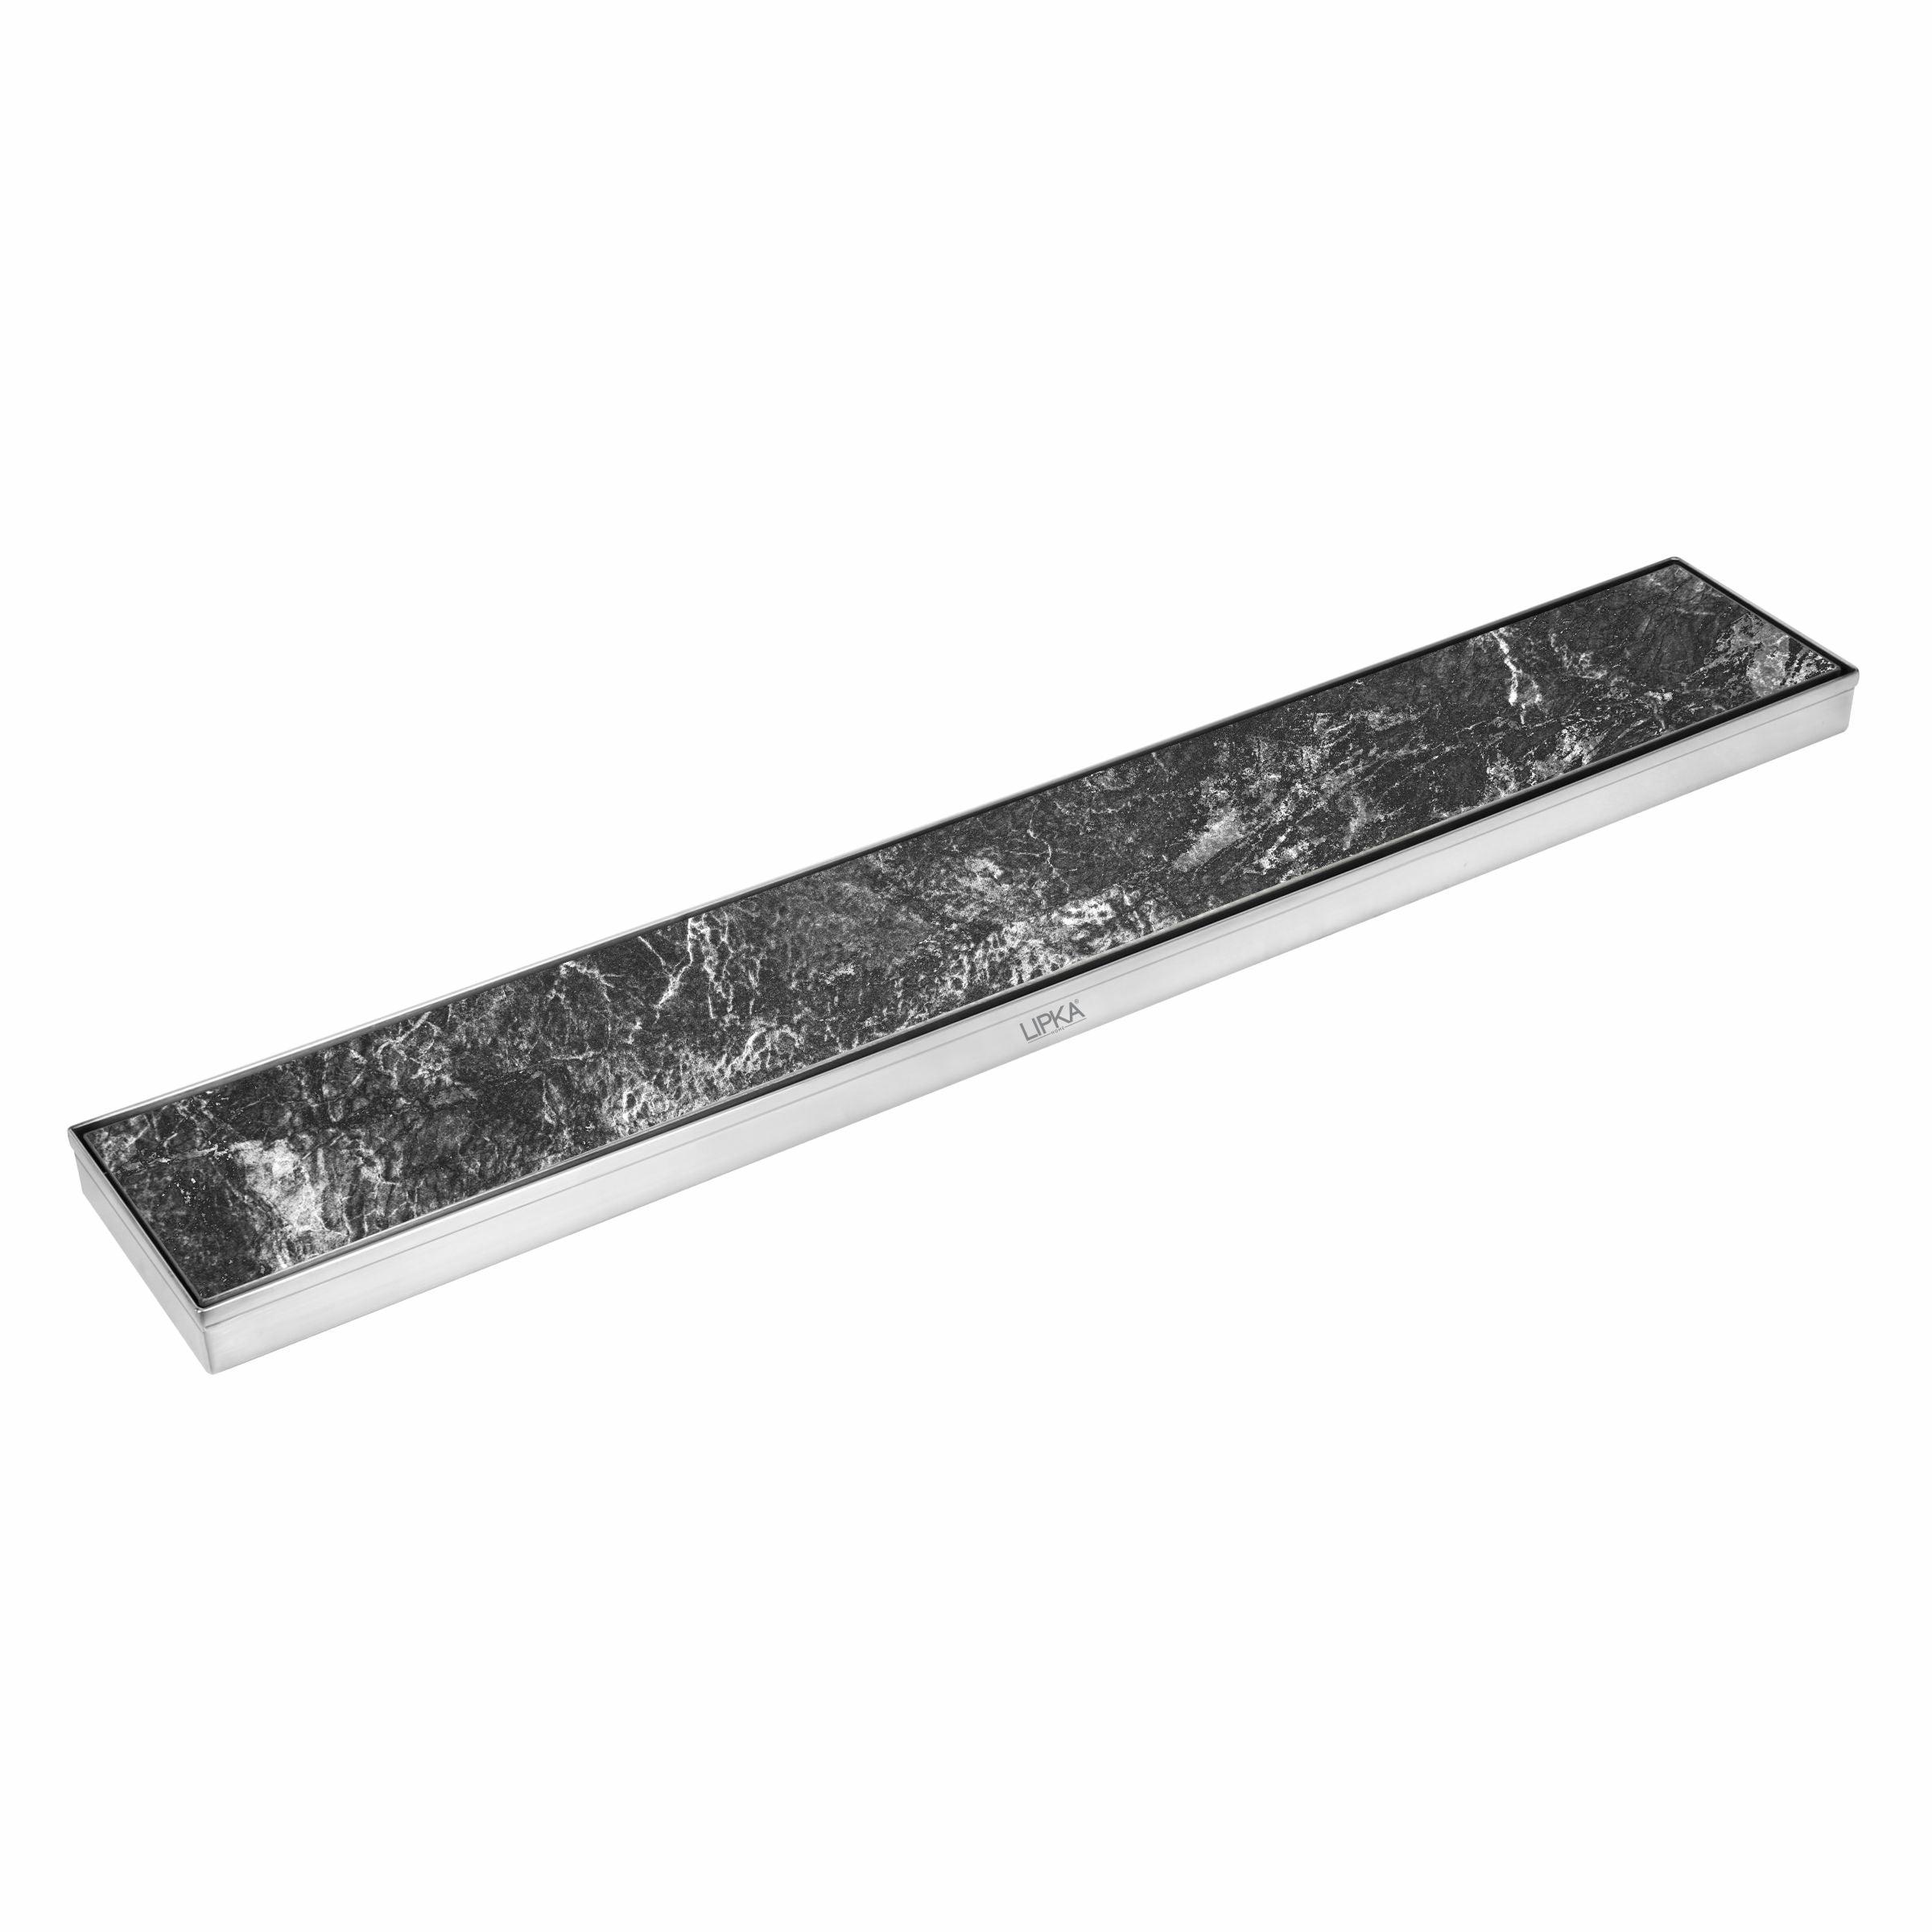 Tile Insert Shower Drain Channel (40 x 4 Inches) - LIPKA - Lipka Home